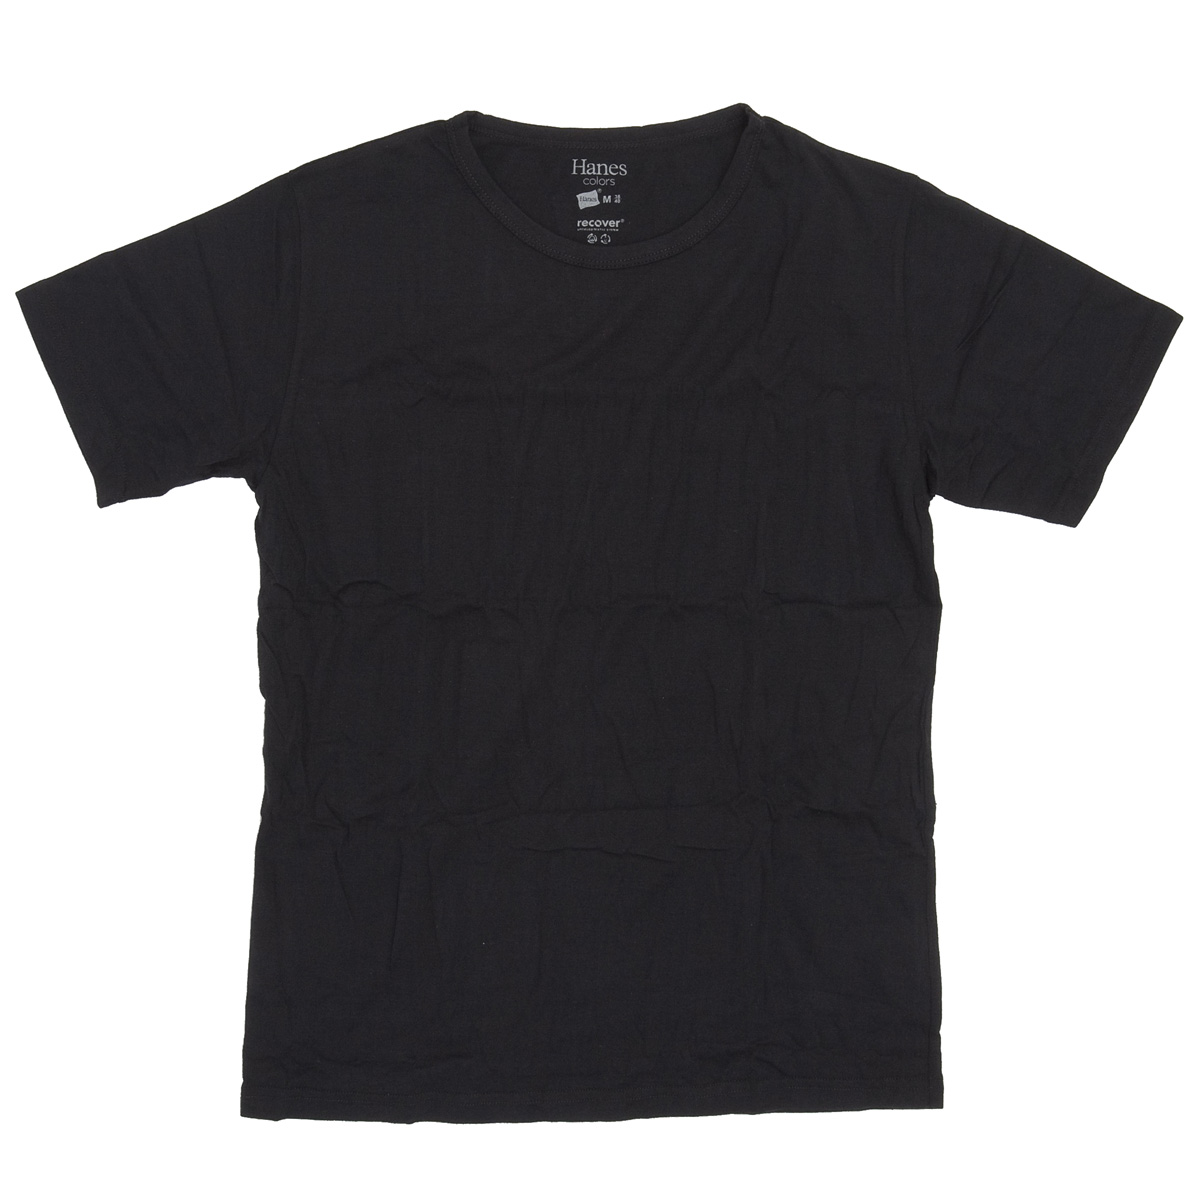 HANES HM1-P101メンズ クルーネックTシャツ　Colords-black画像